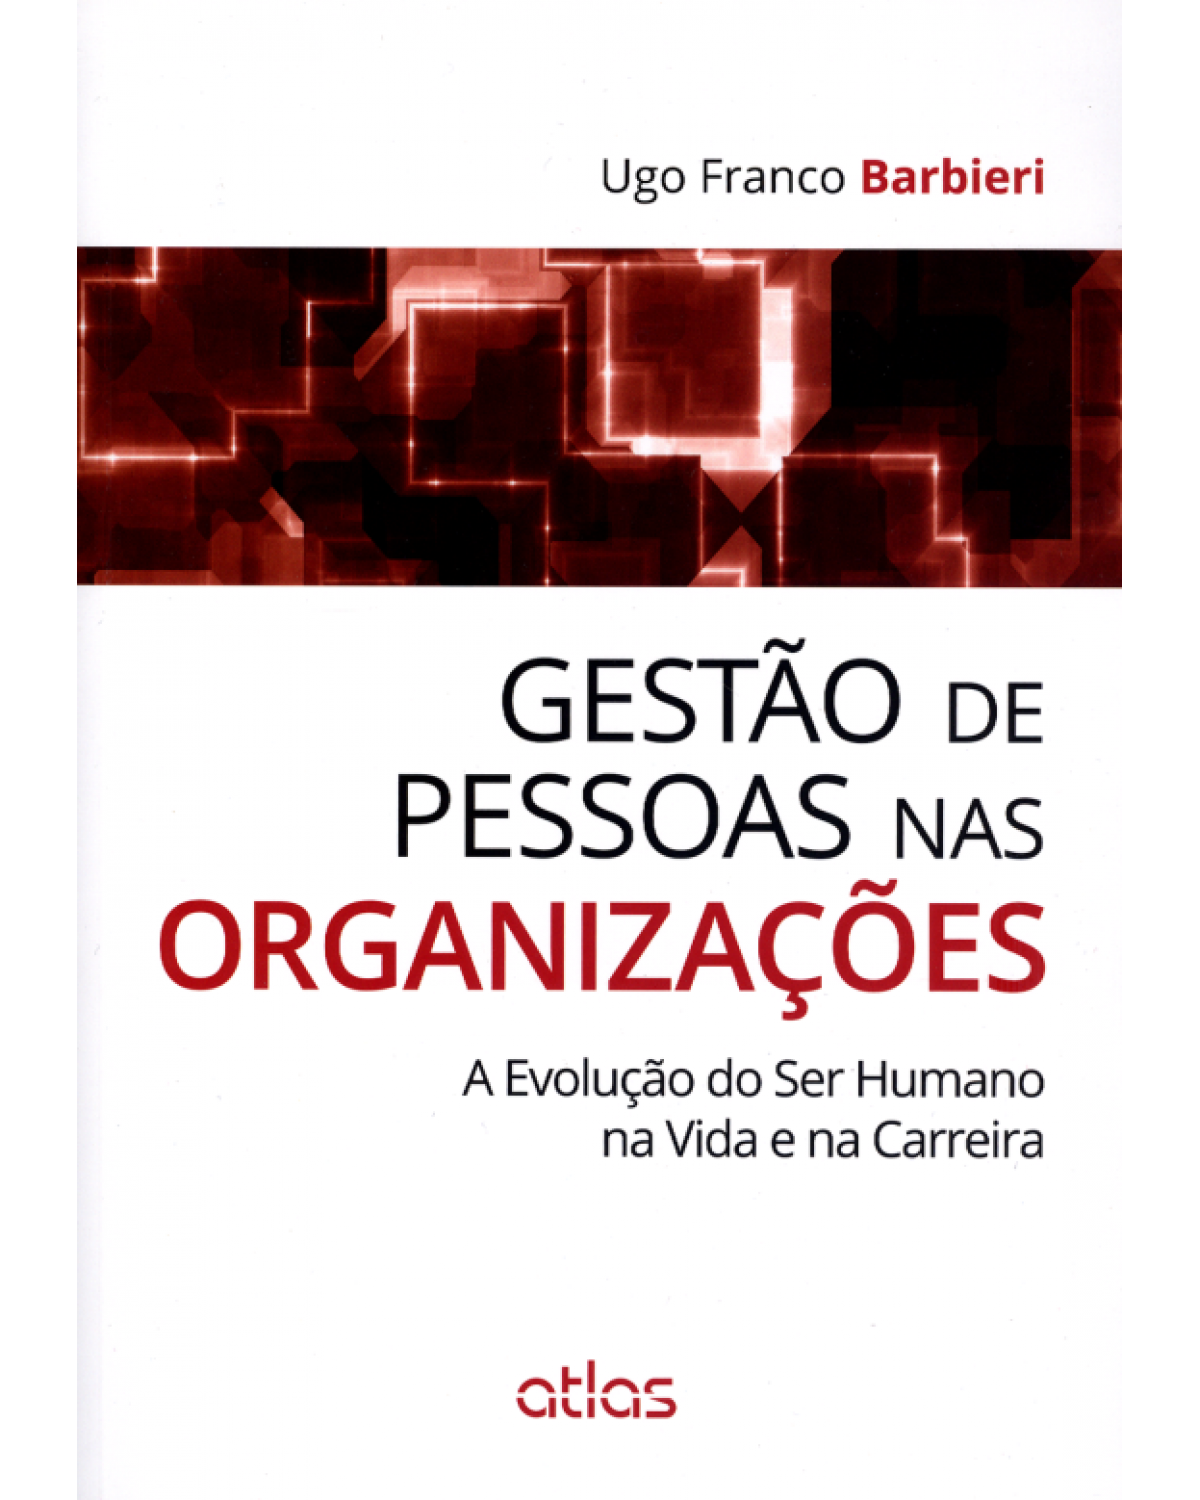 Gestão de pessoas nas organizações - A evolução do ser humano na vida e na carreira - 1ª Edição | 2014